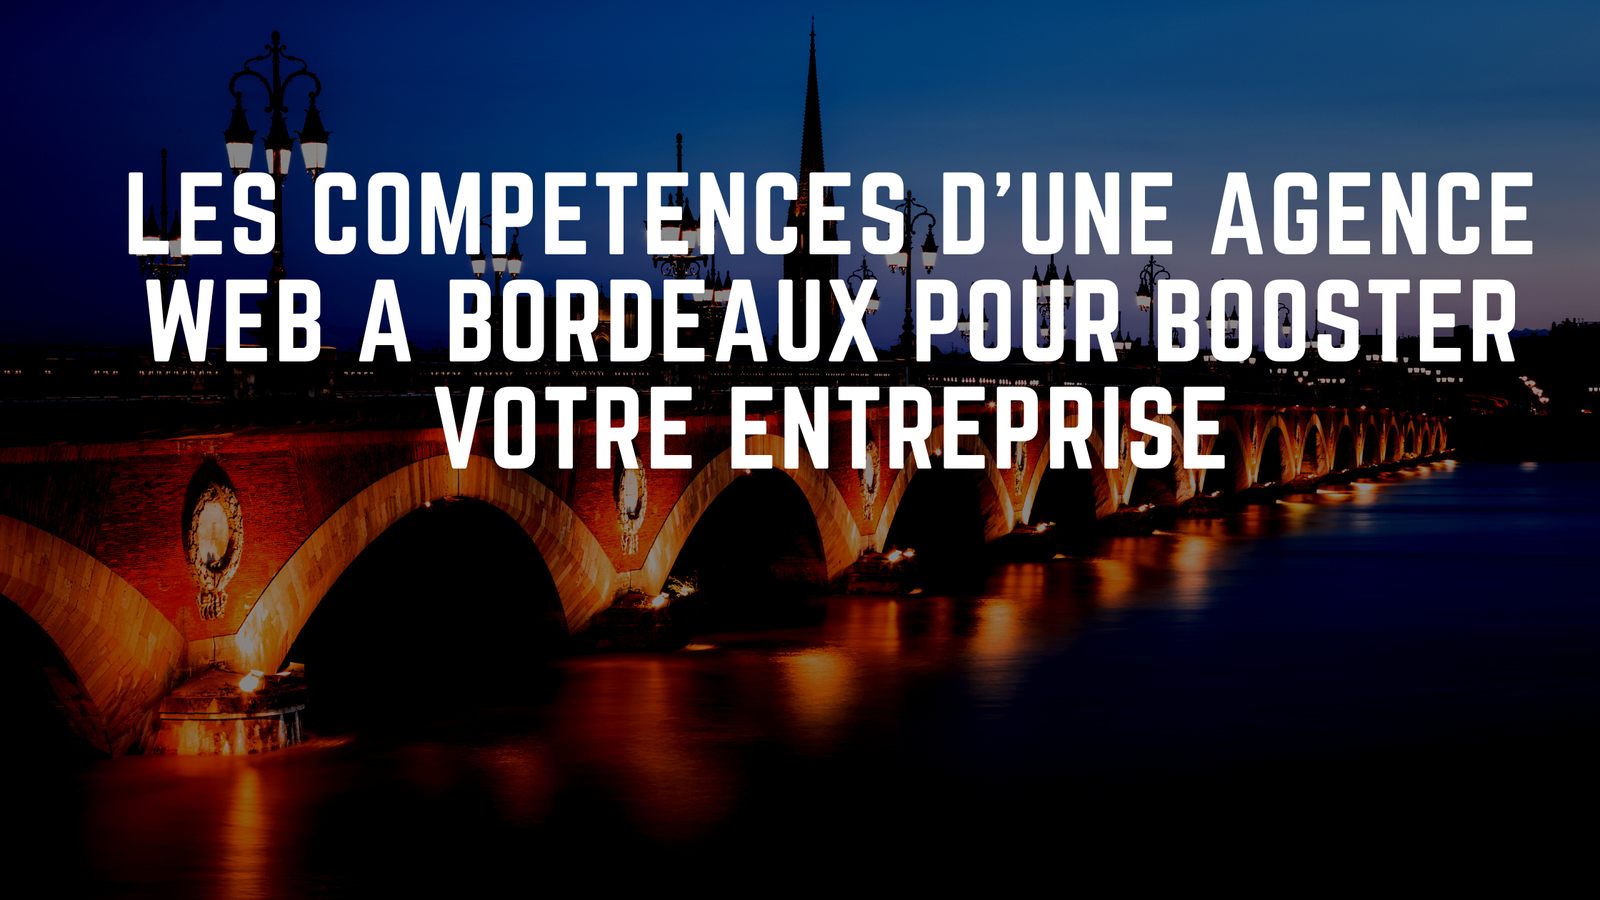 Les competences cles dune agence web a Bordeaux pour booster votre entreprise